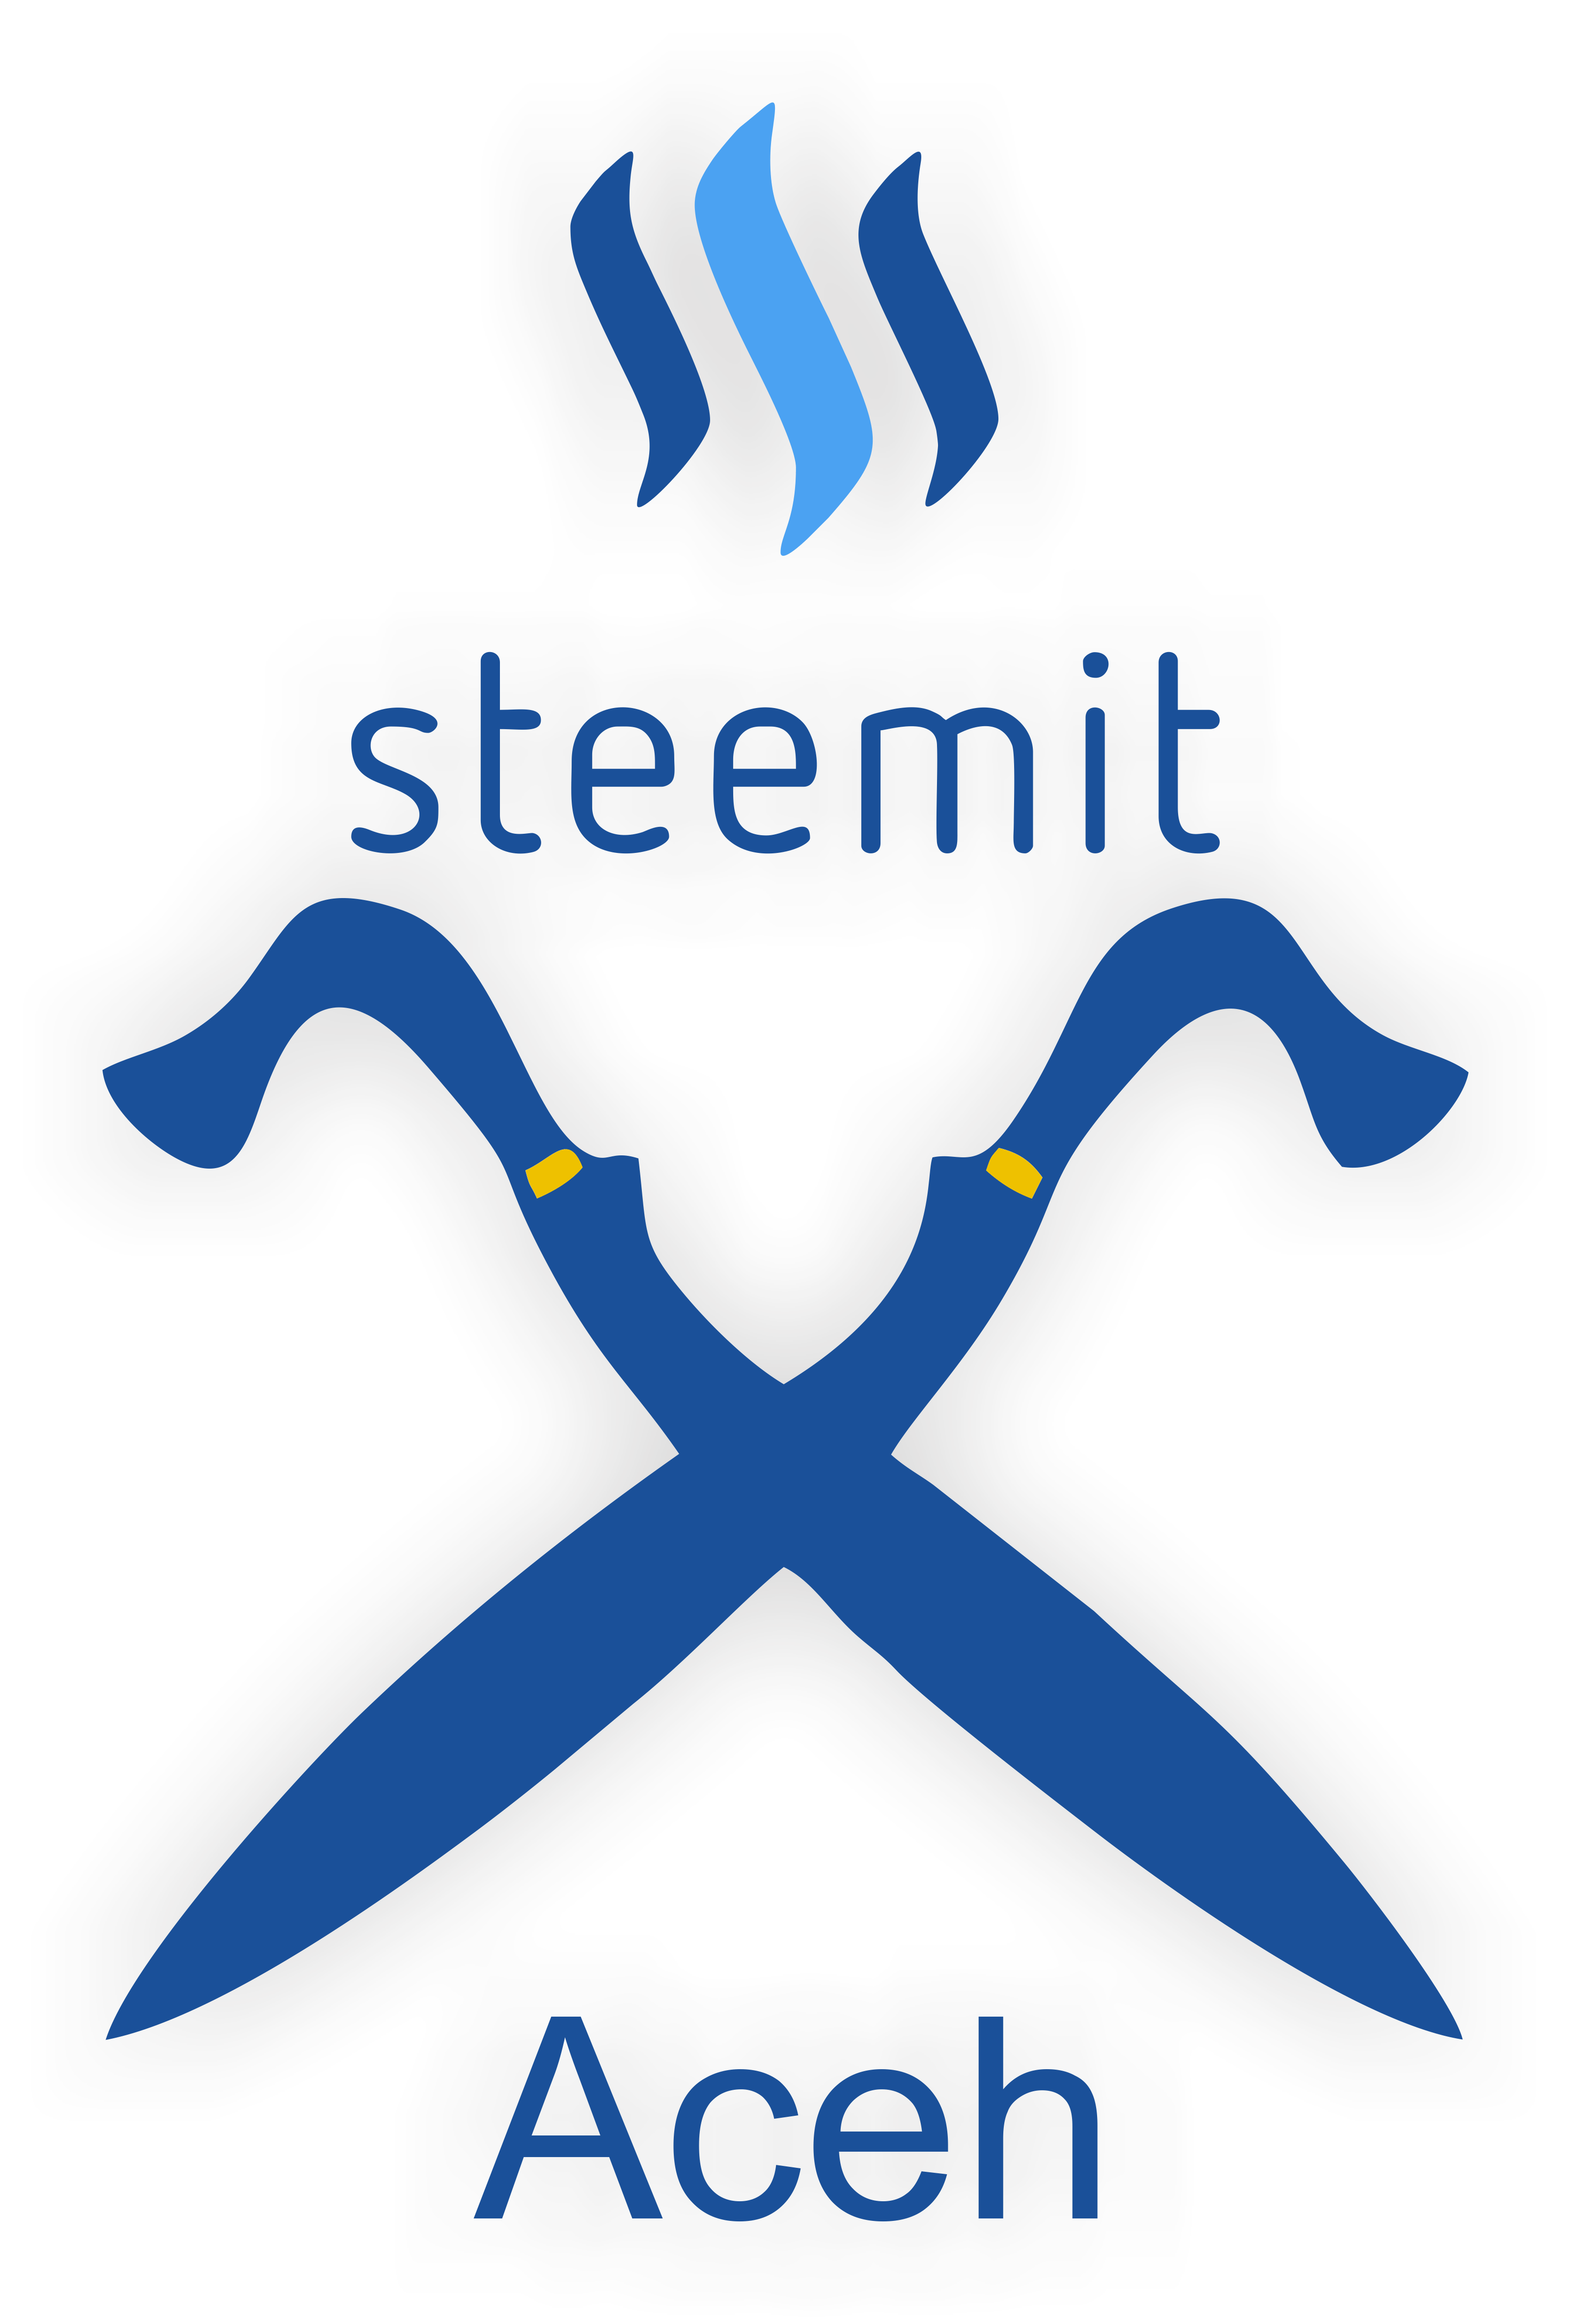 Steemit Logo - Aceh Steemit Logo Design